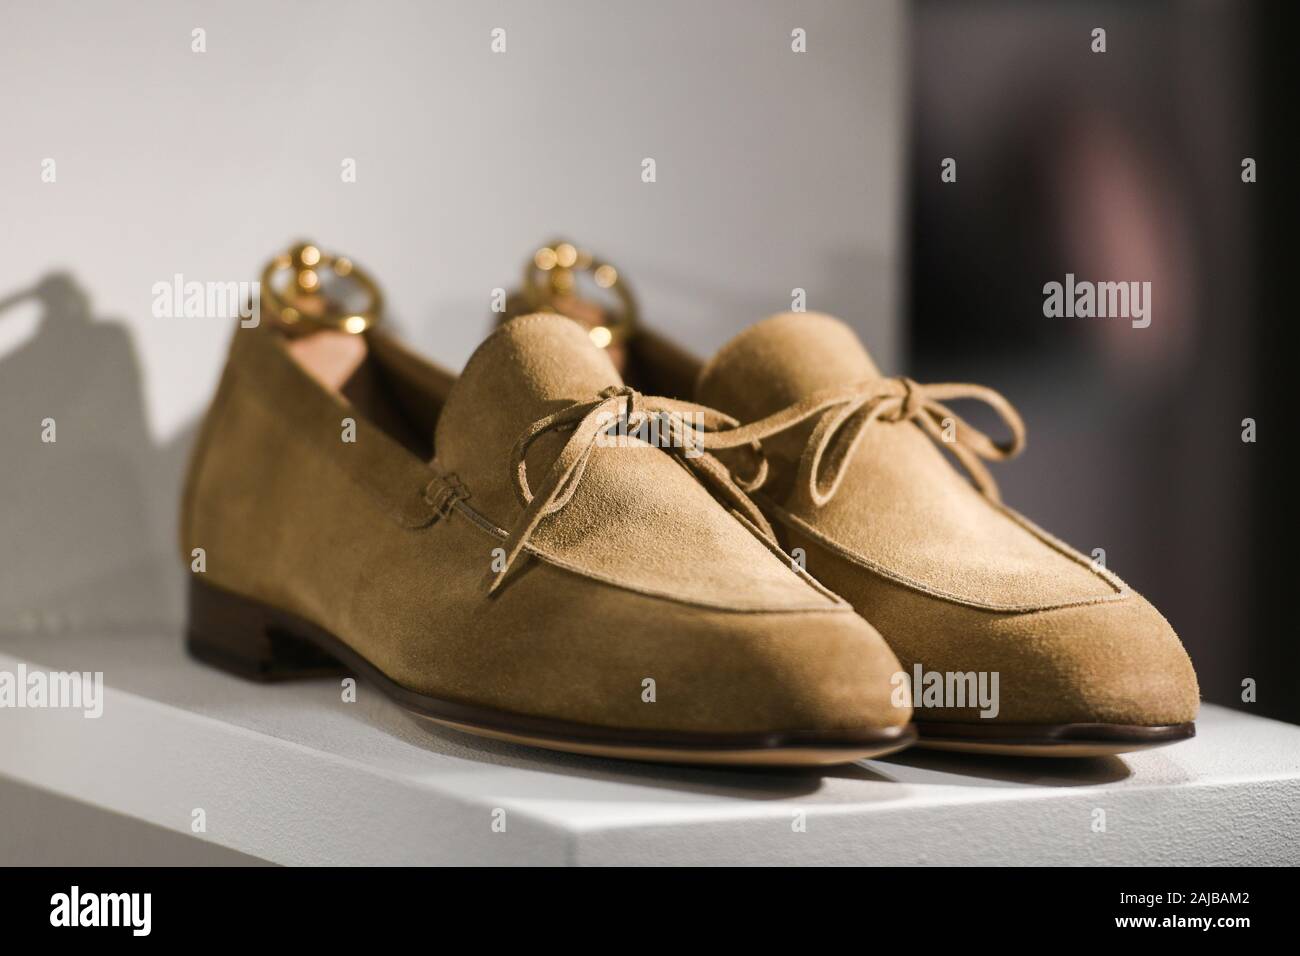 Tods chaussures Banque de photographies et d'images à haute résolution -  Alamy